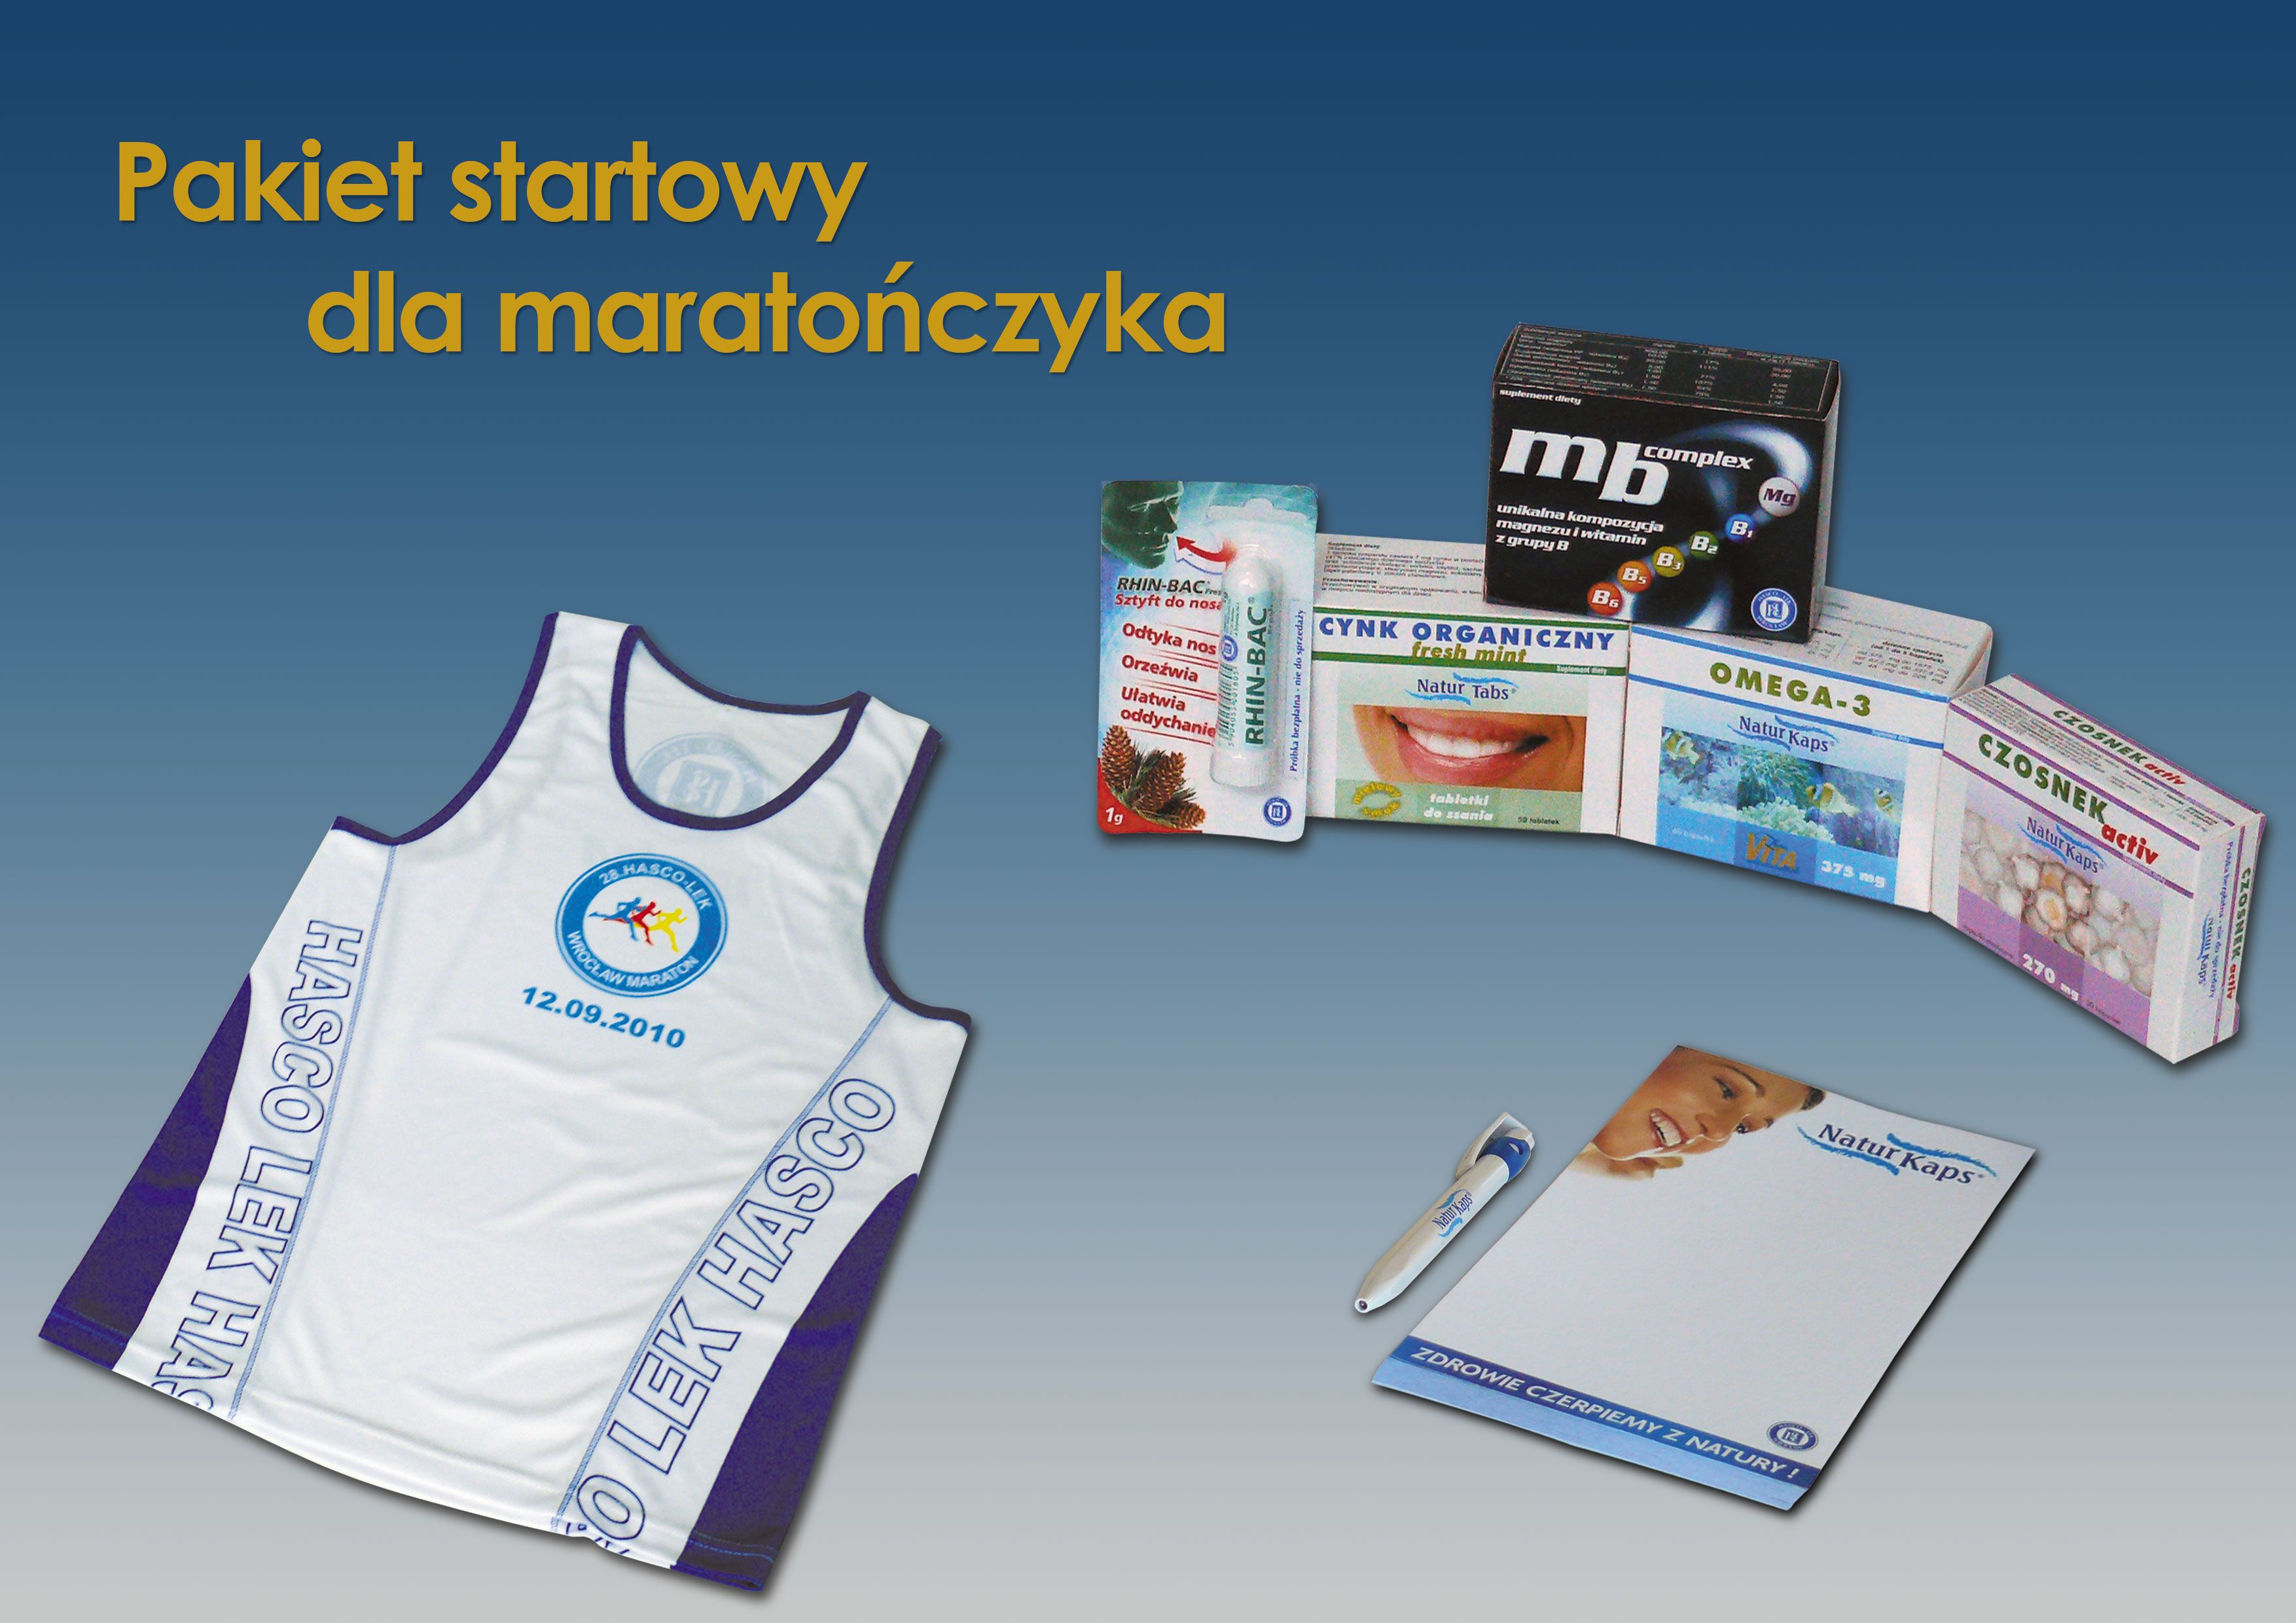 28. HASCO-LEK Wrocław Maraton, Materiały prasowe